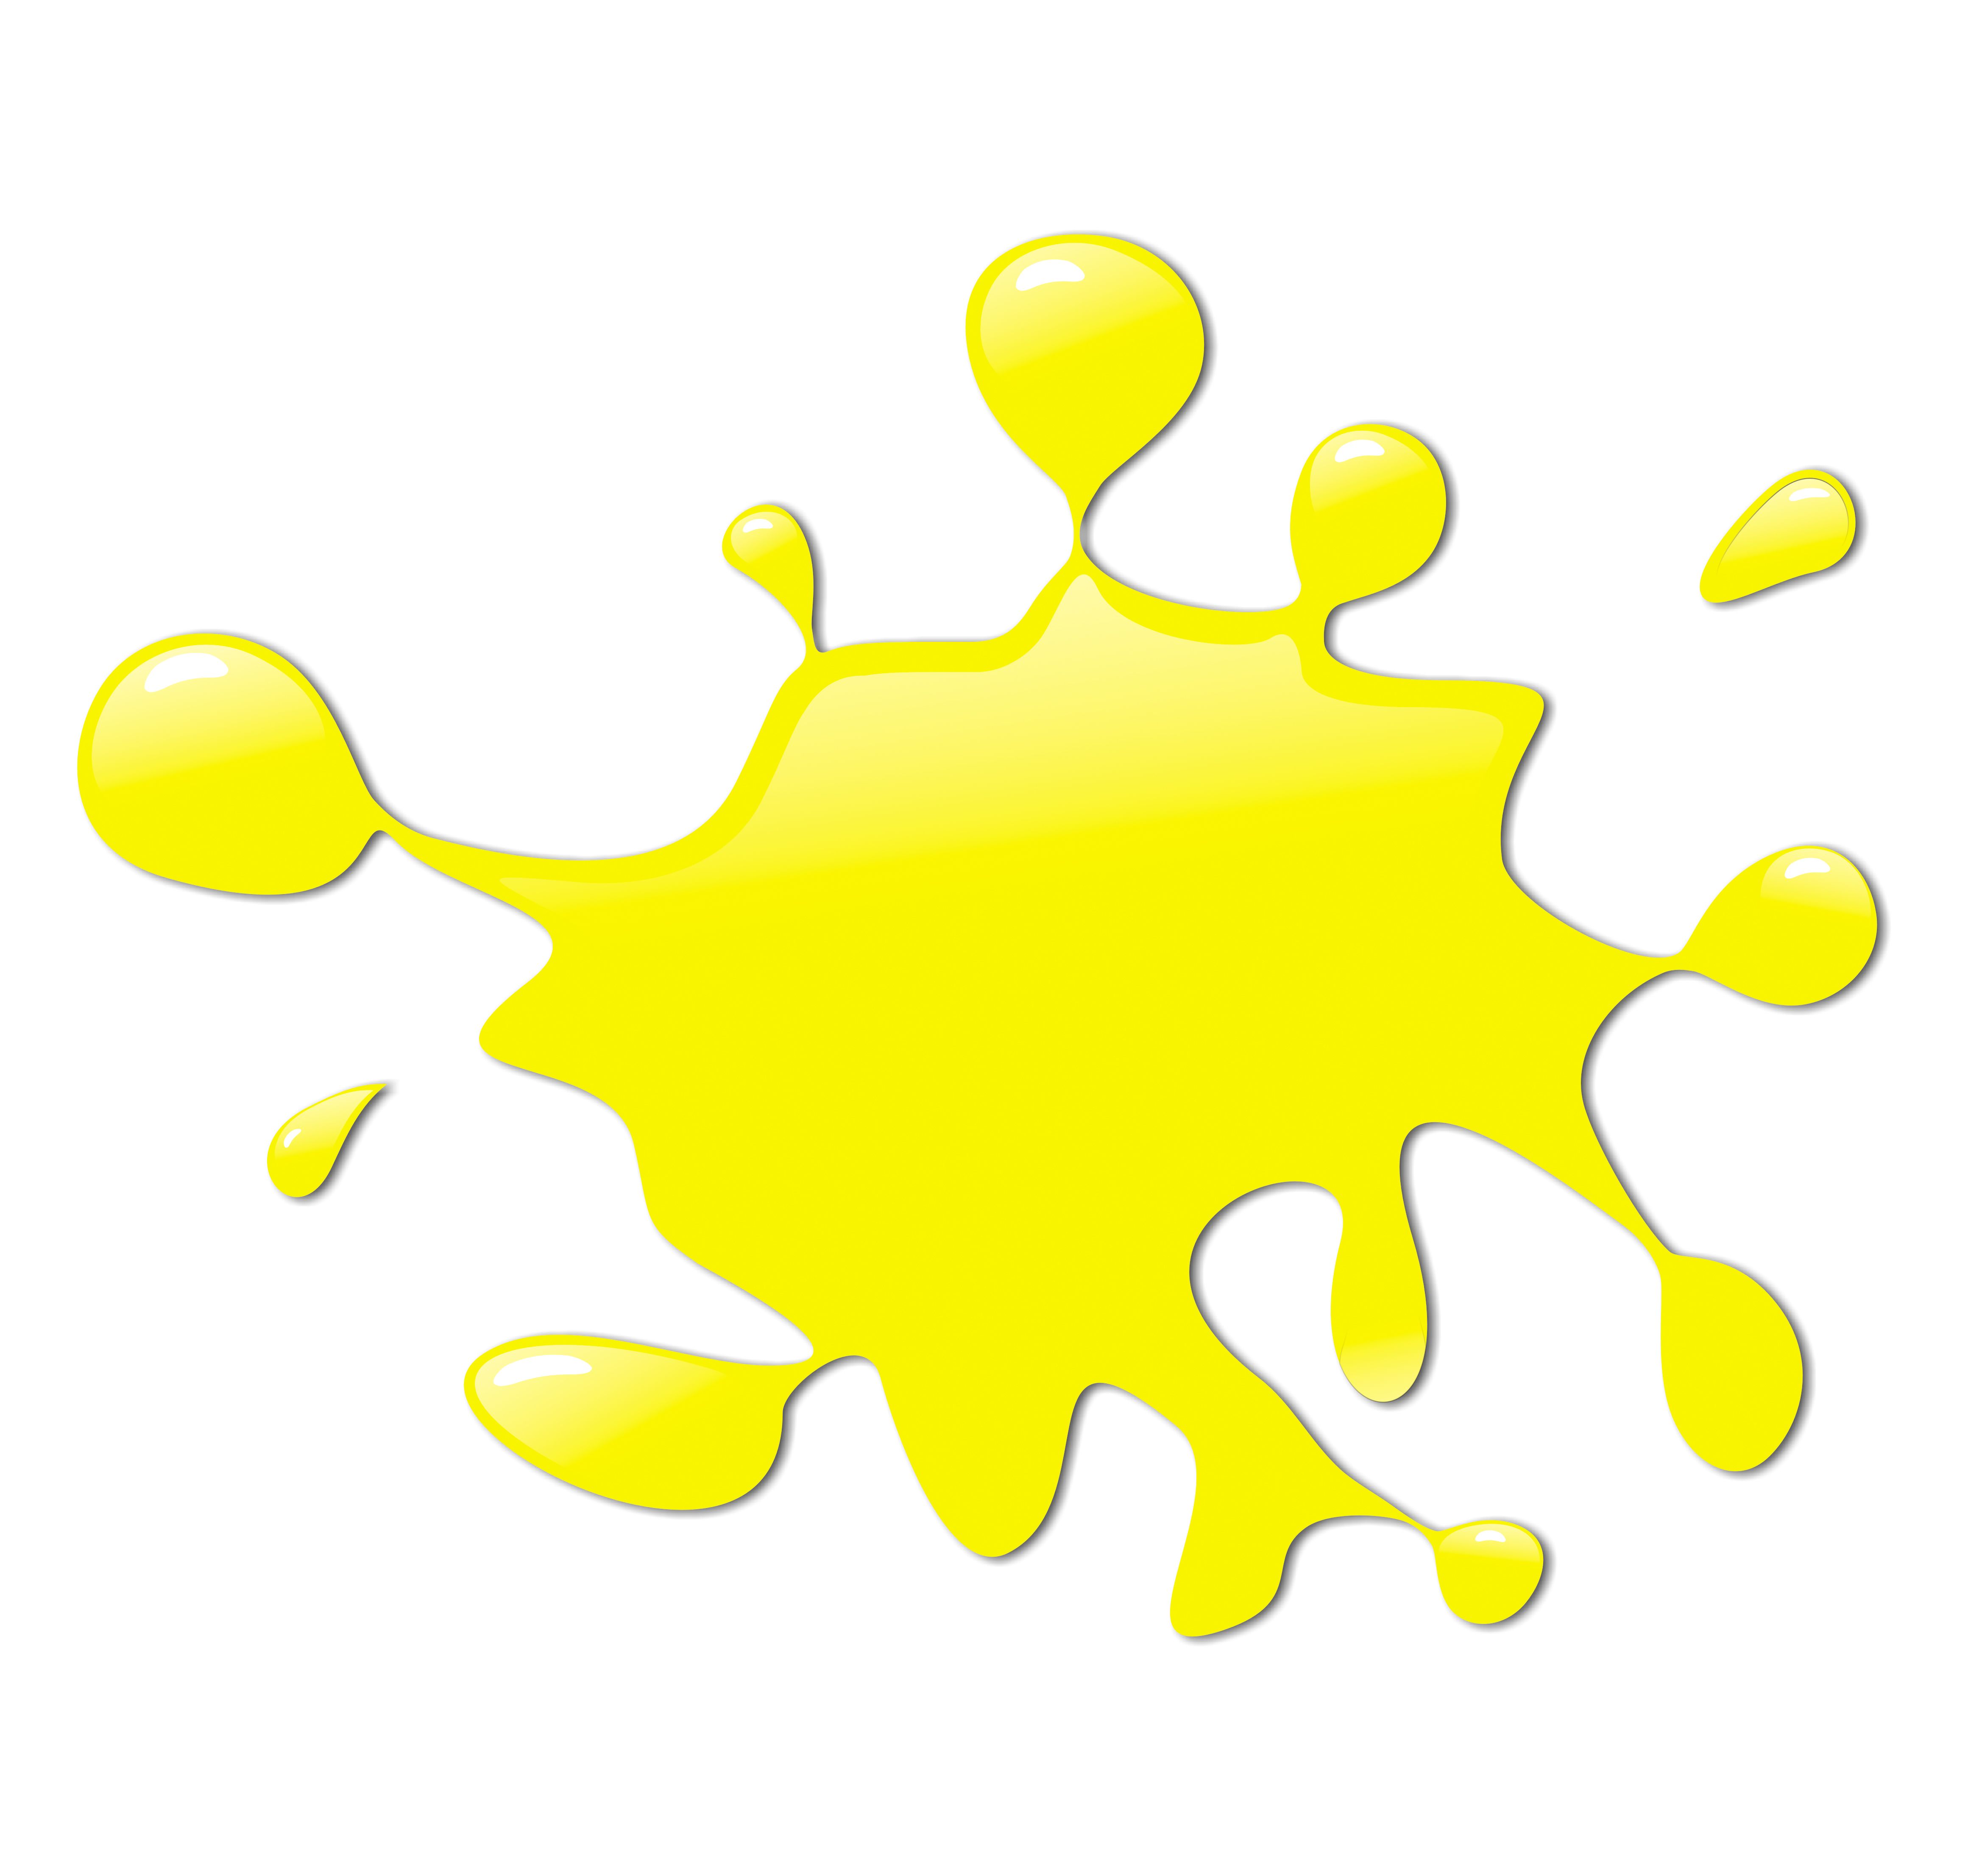 yellow paint splatter - Google zoeken | kunst | Pinterest | Paint party